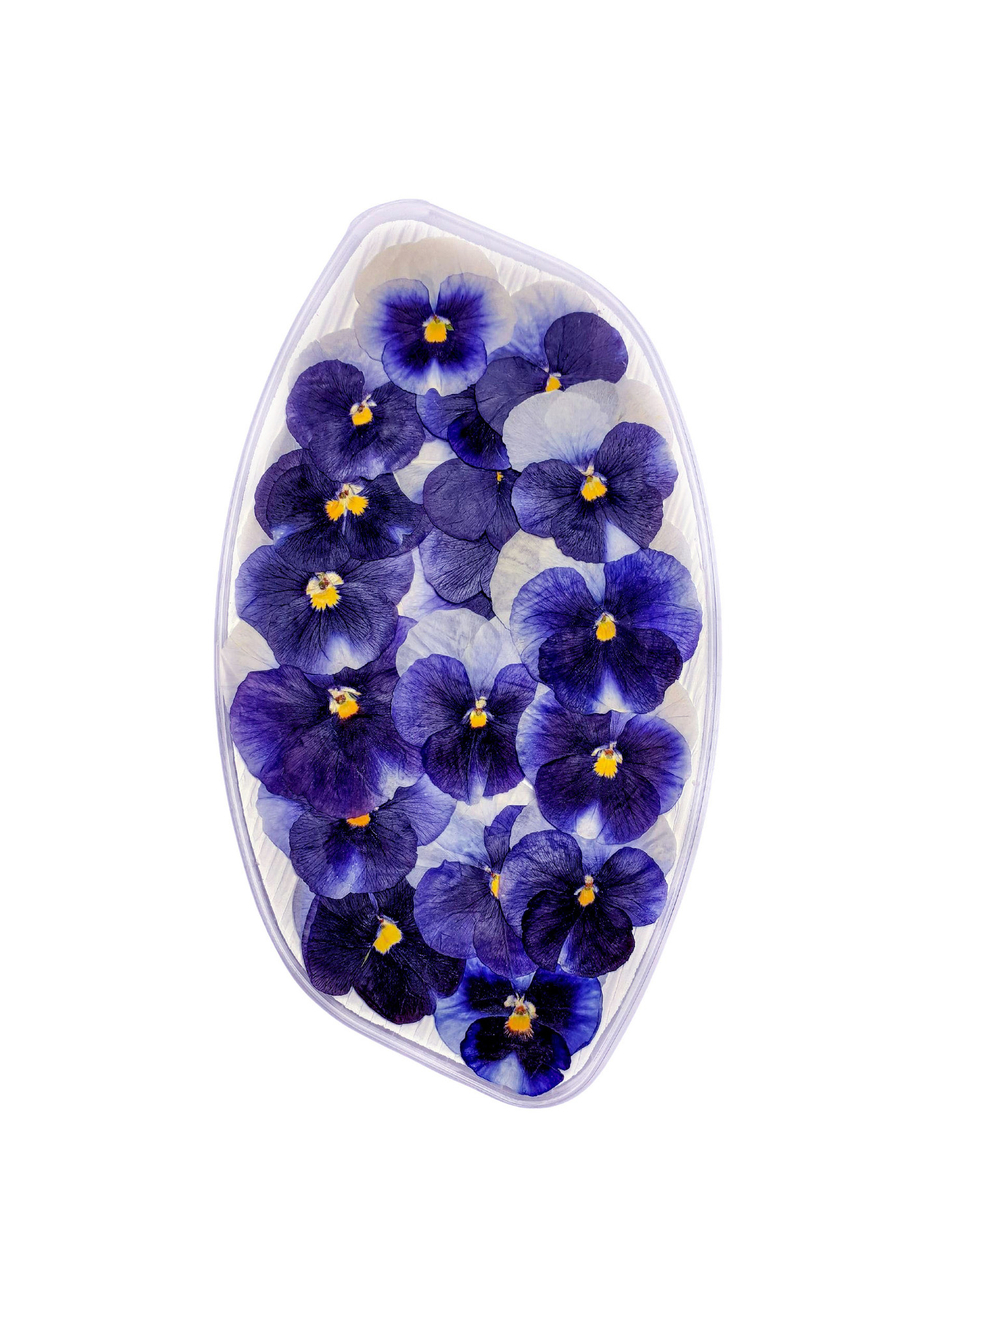 Съедобные цветы виола обезвоженная "Волшебный синий" 20 шт